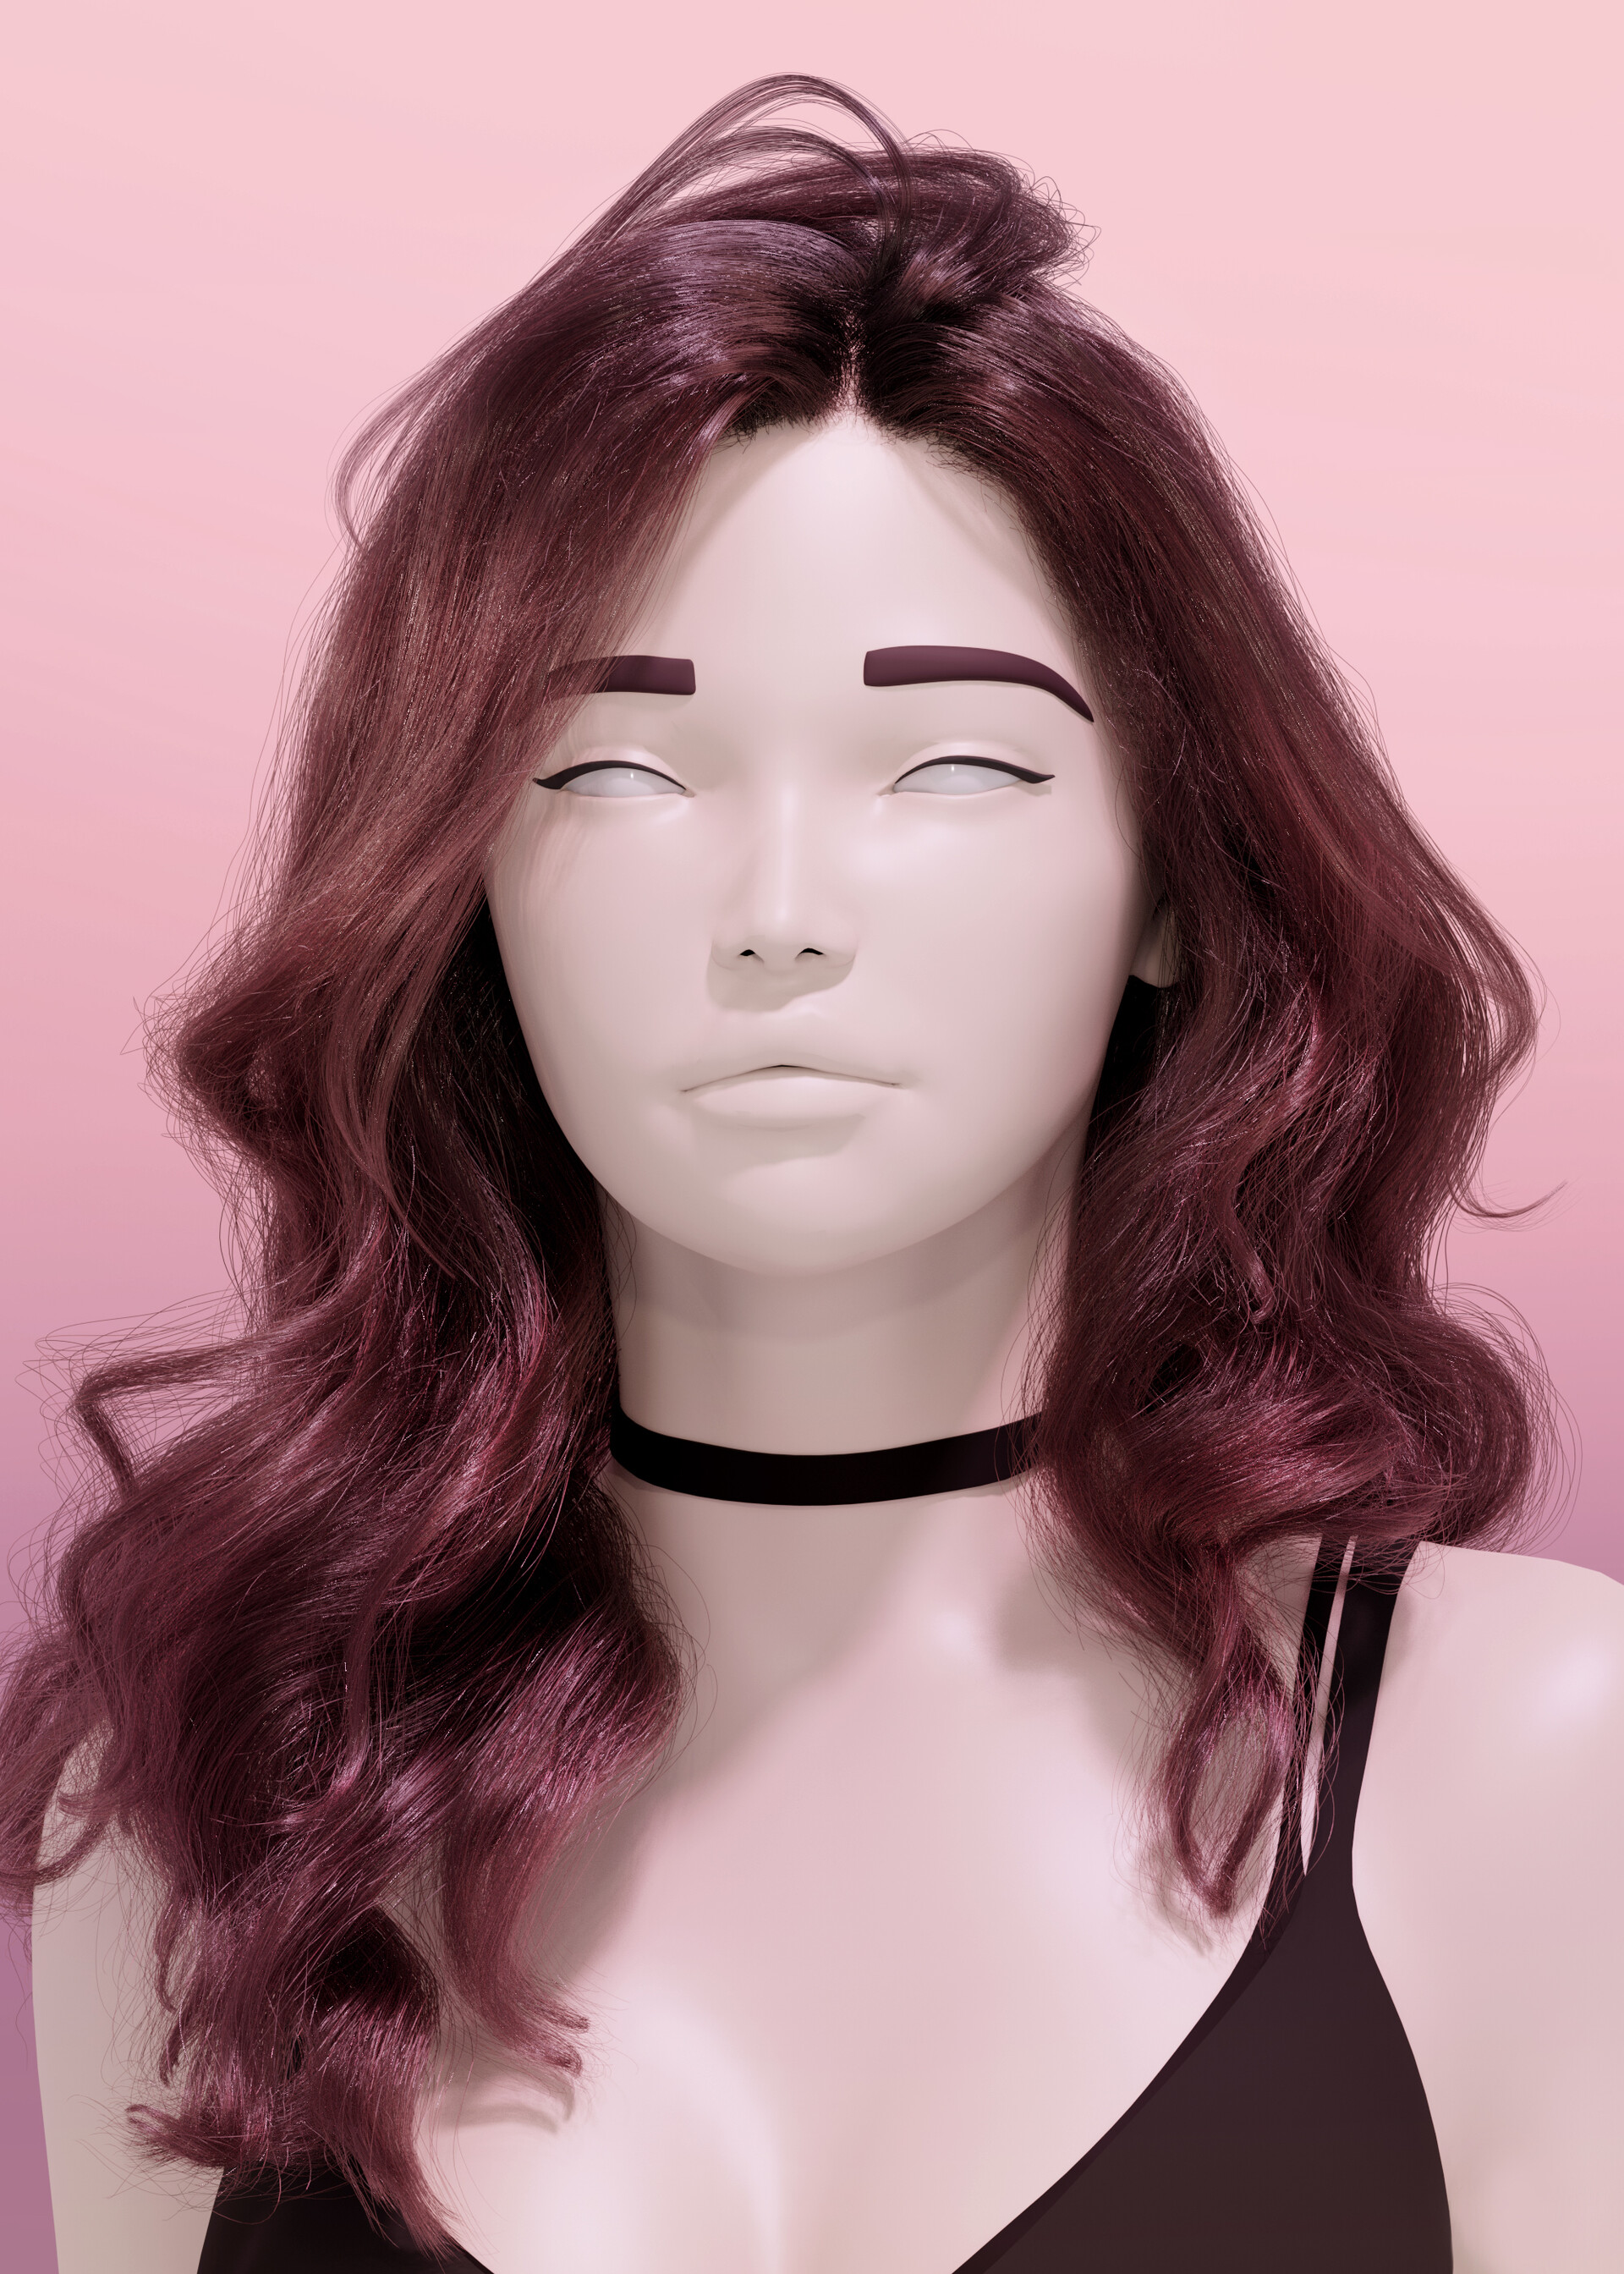 ArtStation - Tutorial: Creating realistic hair in Blender